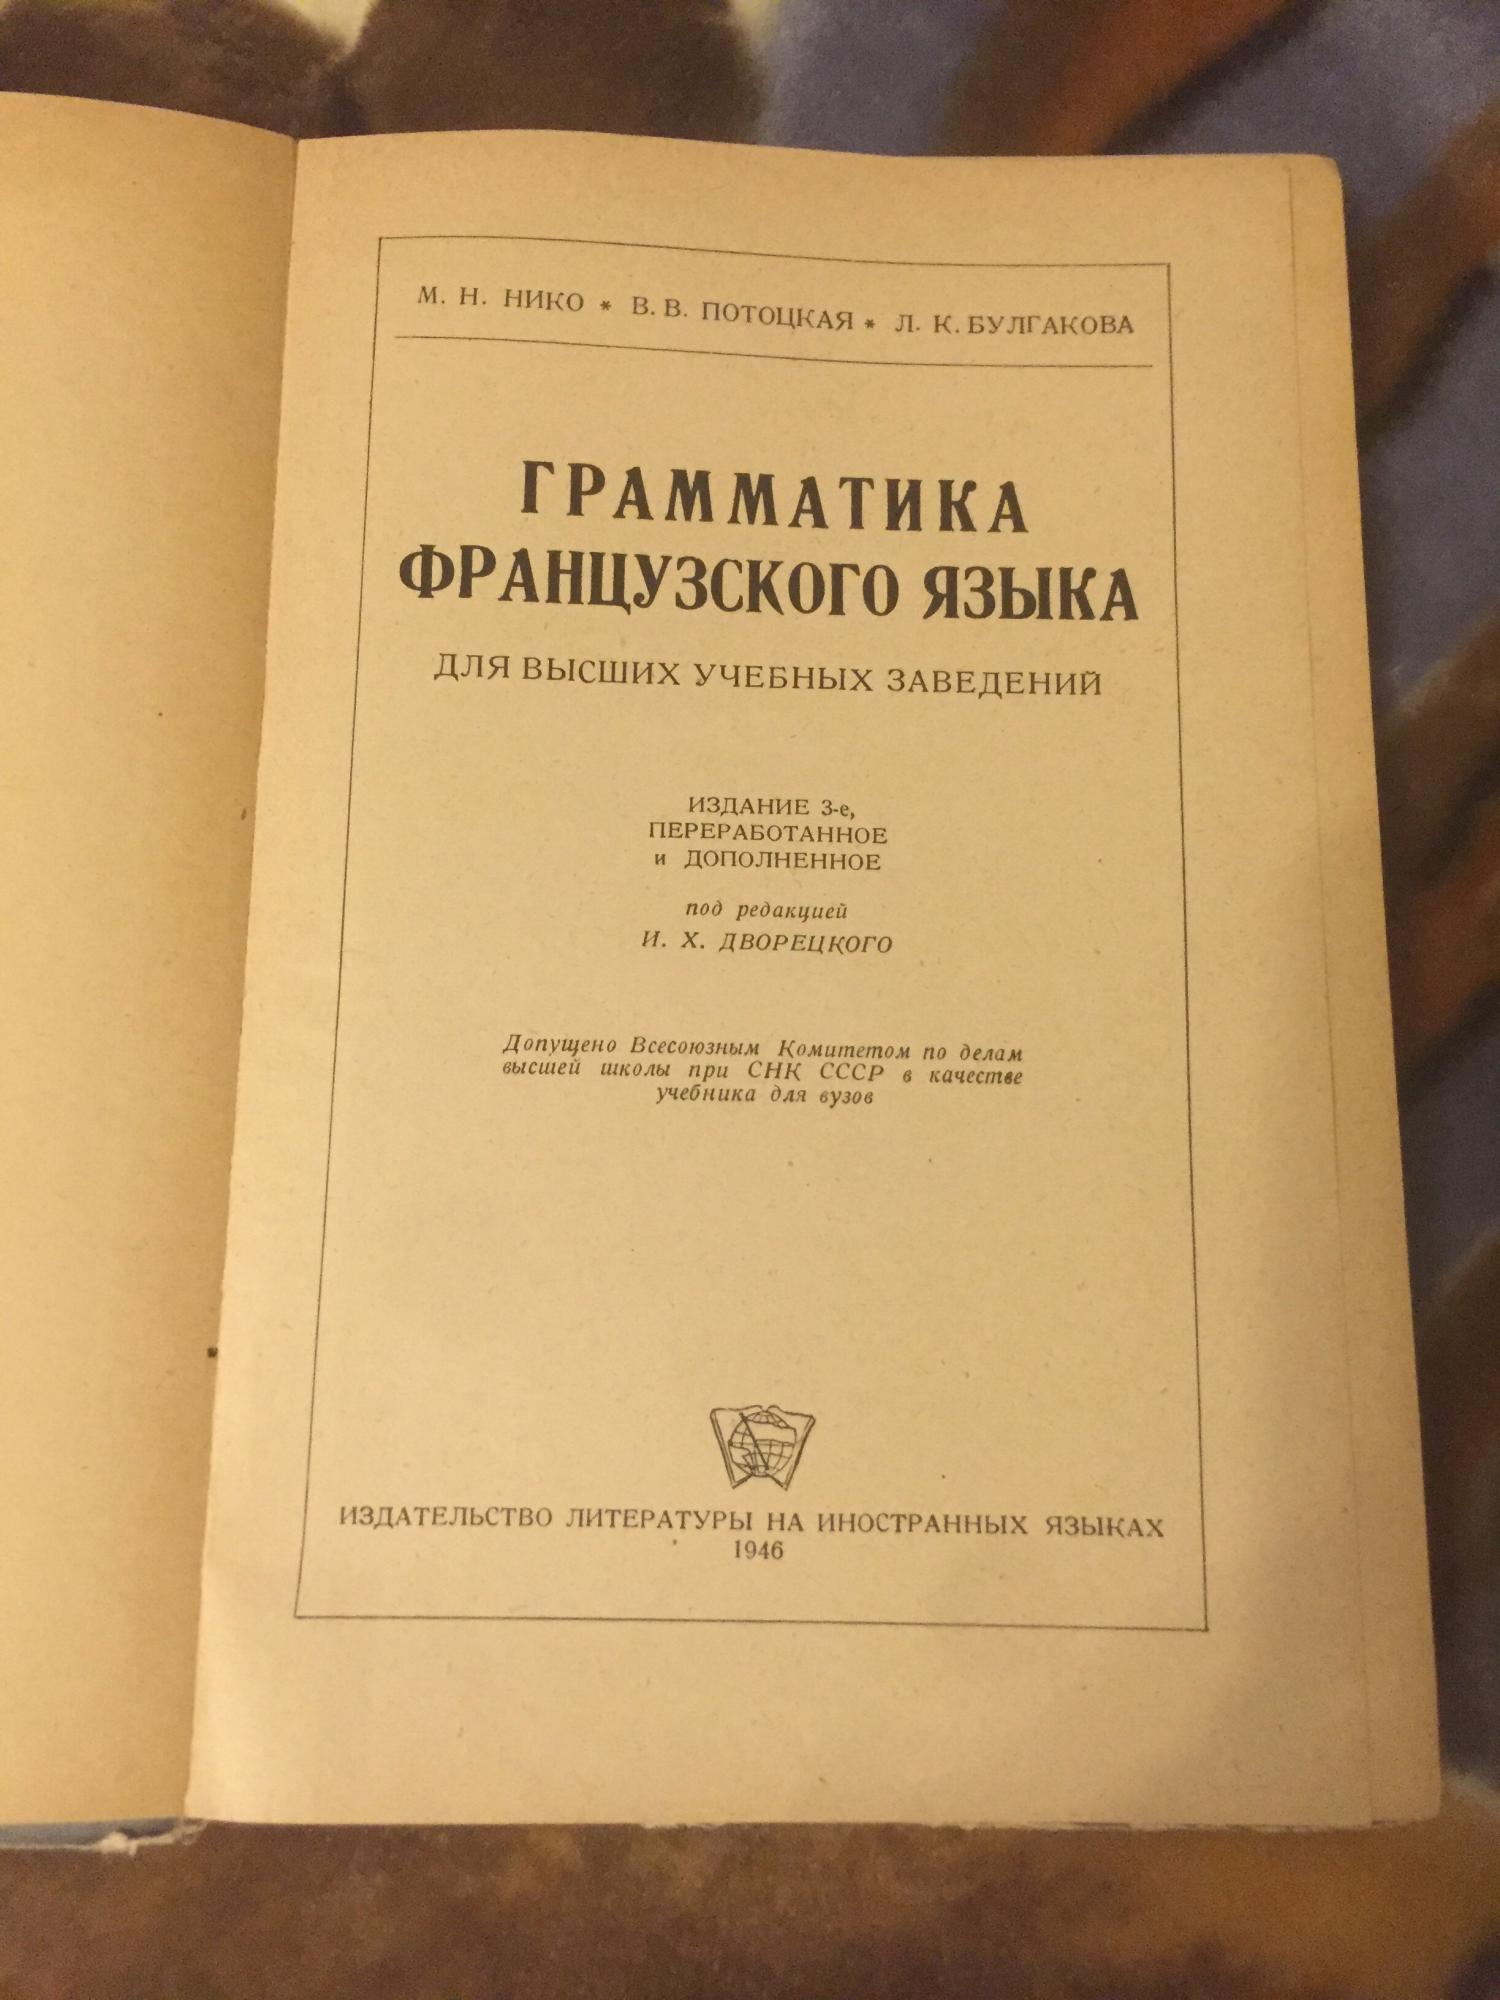 Книга « Грамматика французского языка» 1946г в Москве 89771824945 купить 2